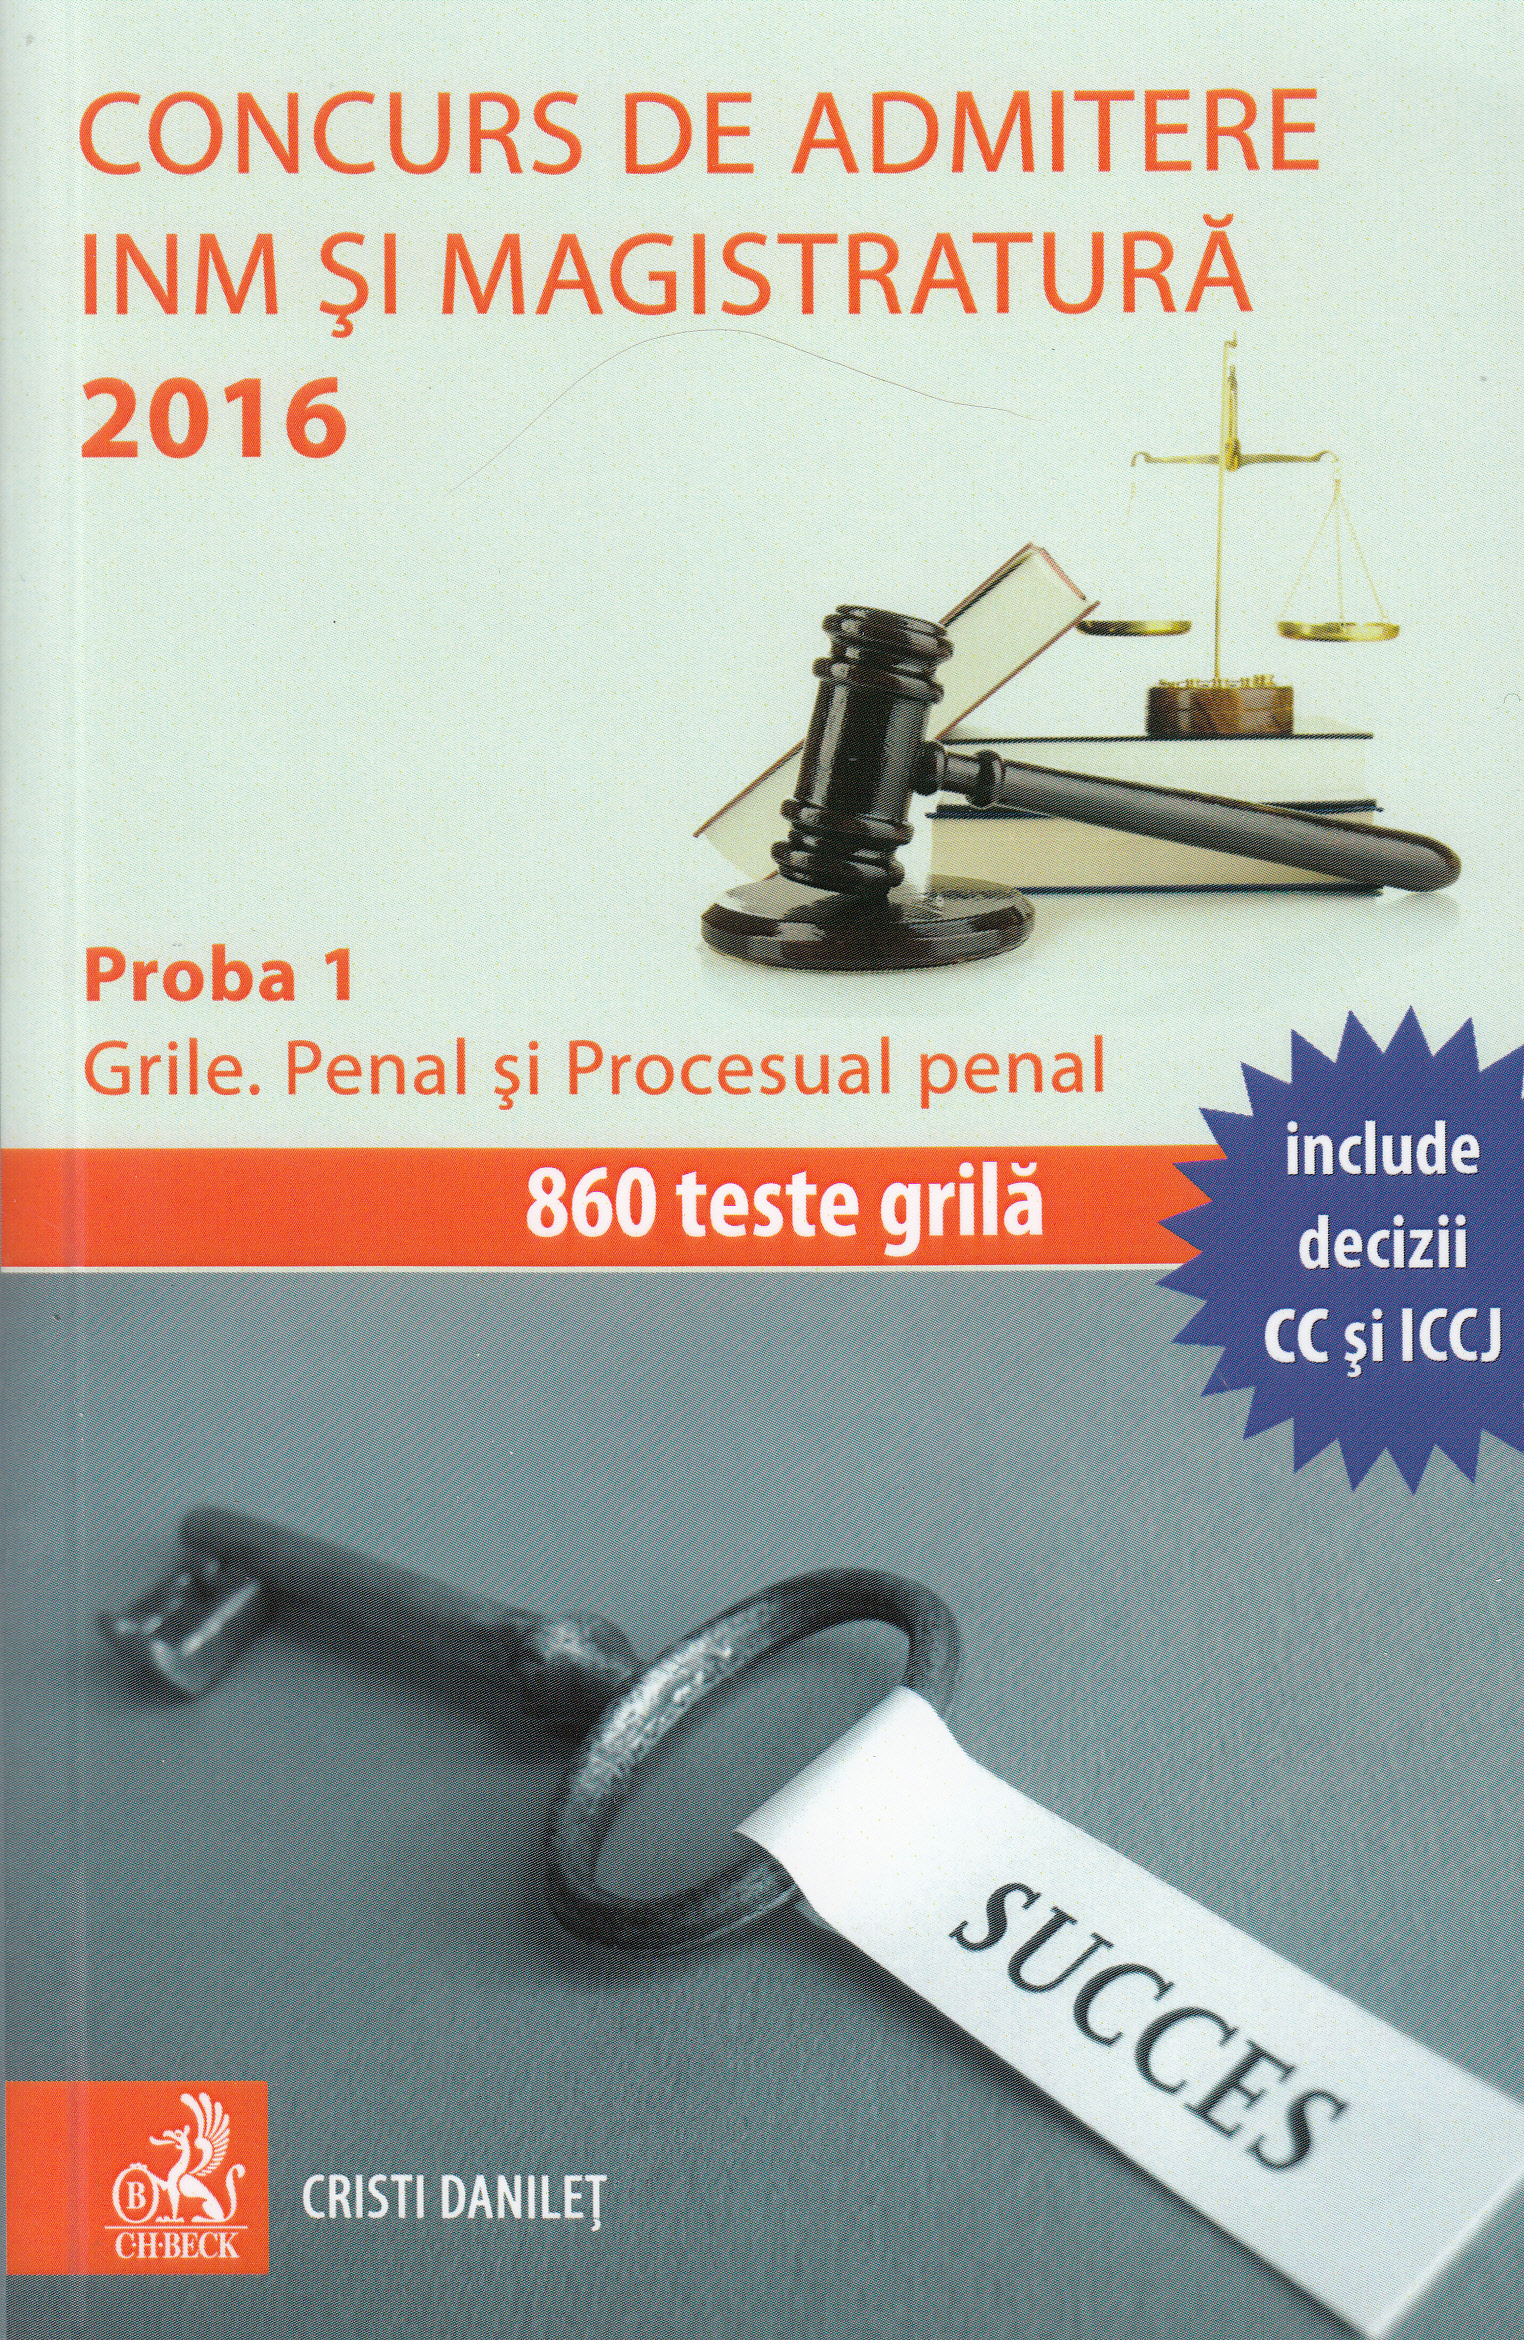 Concurs de admitere INM si Magistratura. Ed. 2016. Proba 1: Grile. Penal si Procesual penal - Cristi Danilet